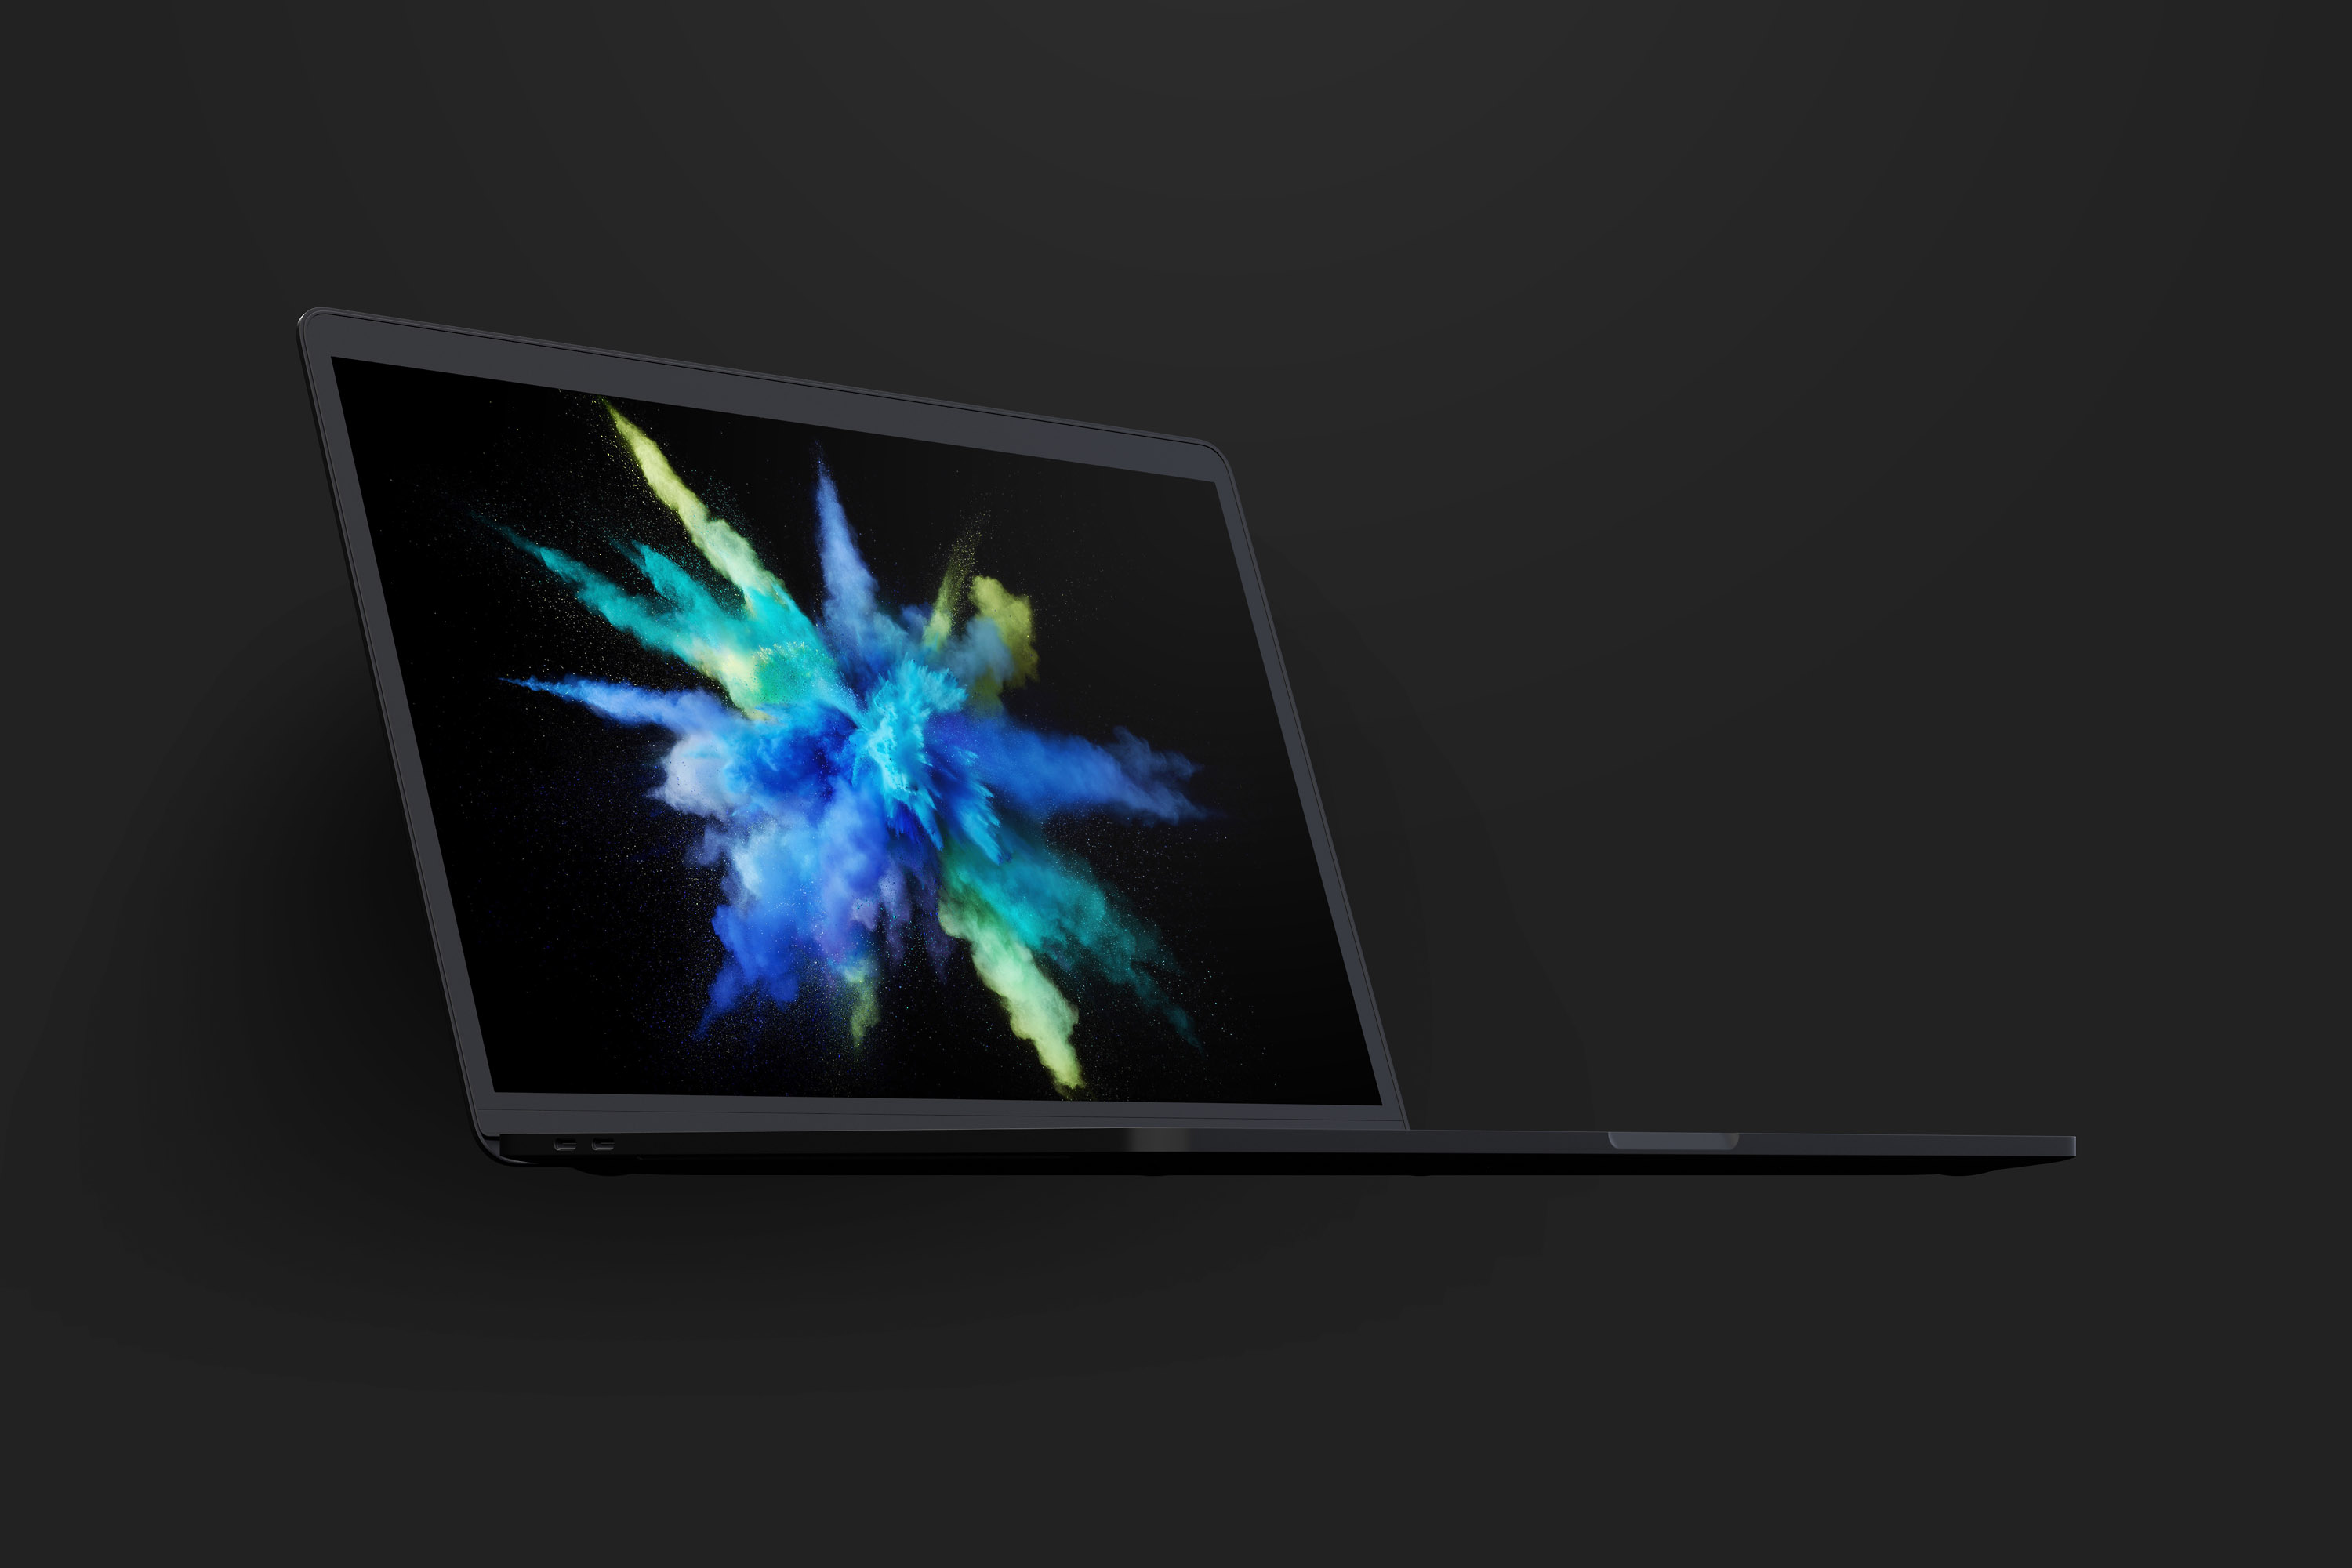 陶瓷黏土材质MacBook Pro笔记本电脑左前视图样机 Clay MacBook Pro 15" with Touch Bar, Front Left View Mockup插图(2)